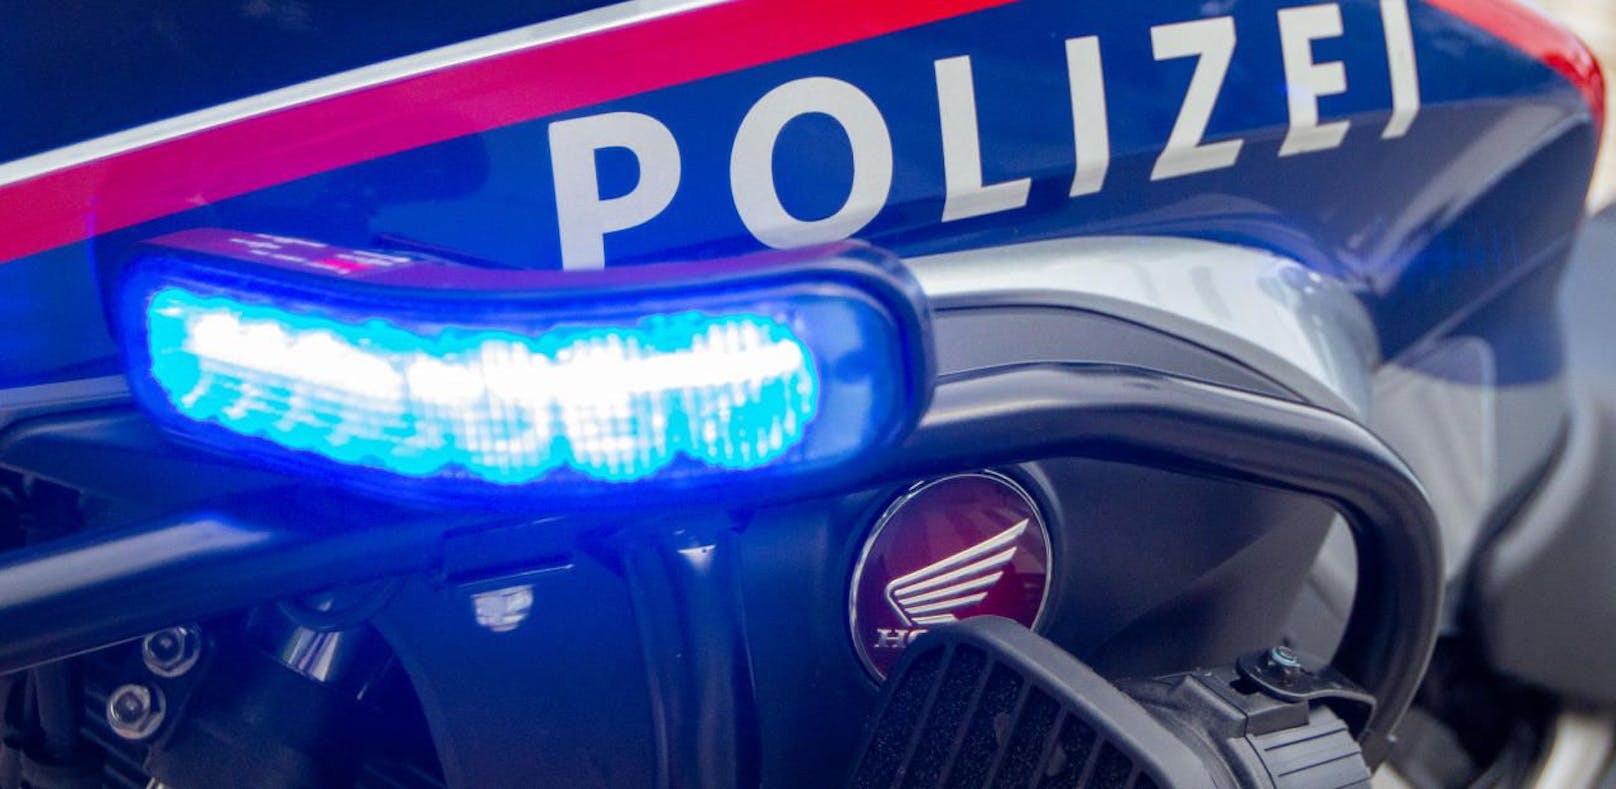 Das Polizei-Logo auf einem Motorrad aufgenommen am Dienstag, 7. Mai 2019, in Wien. Symbolbild